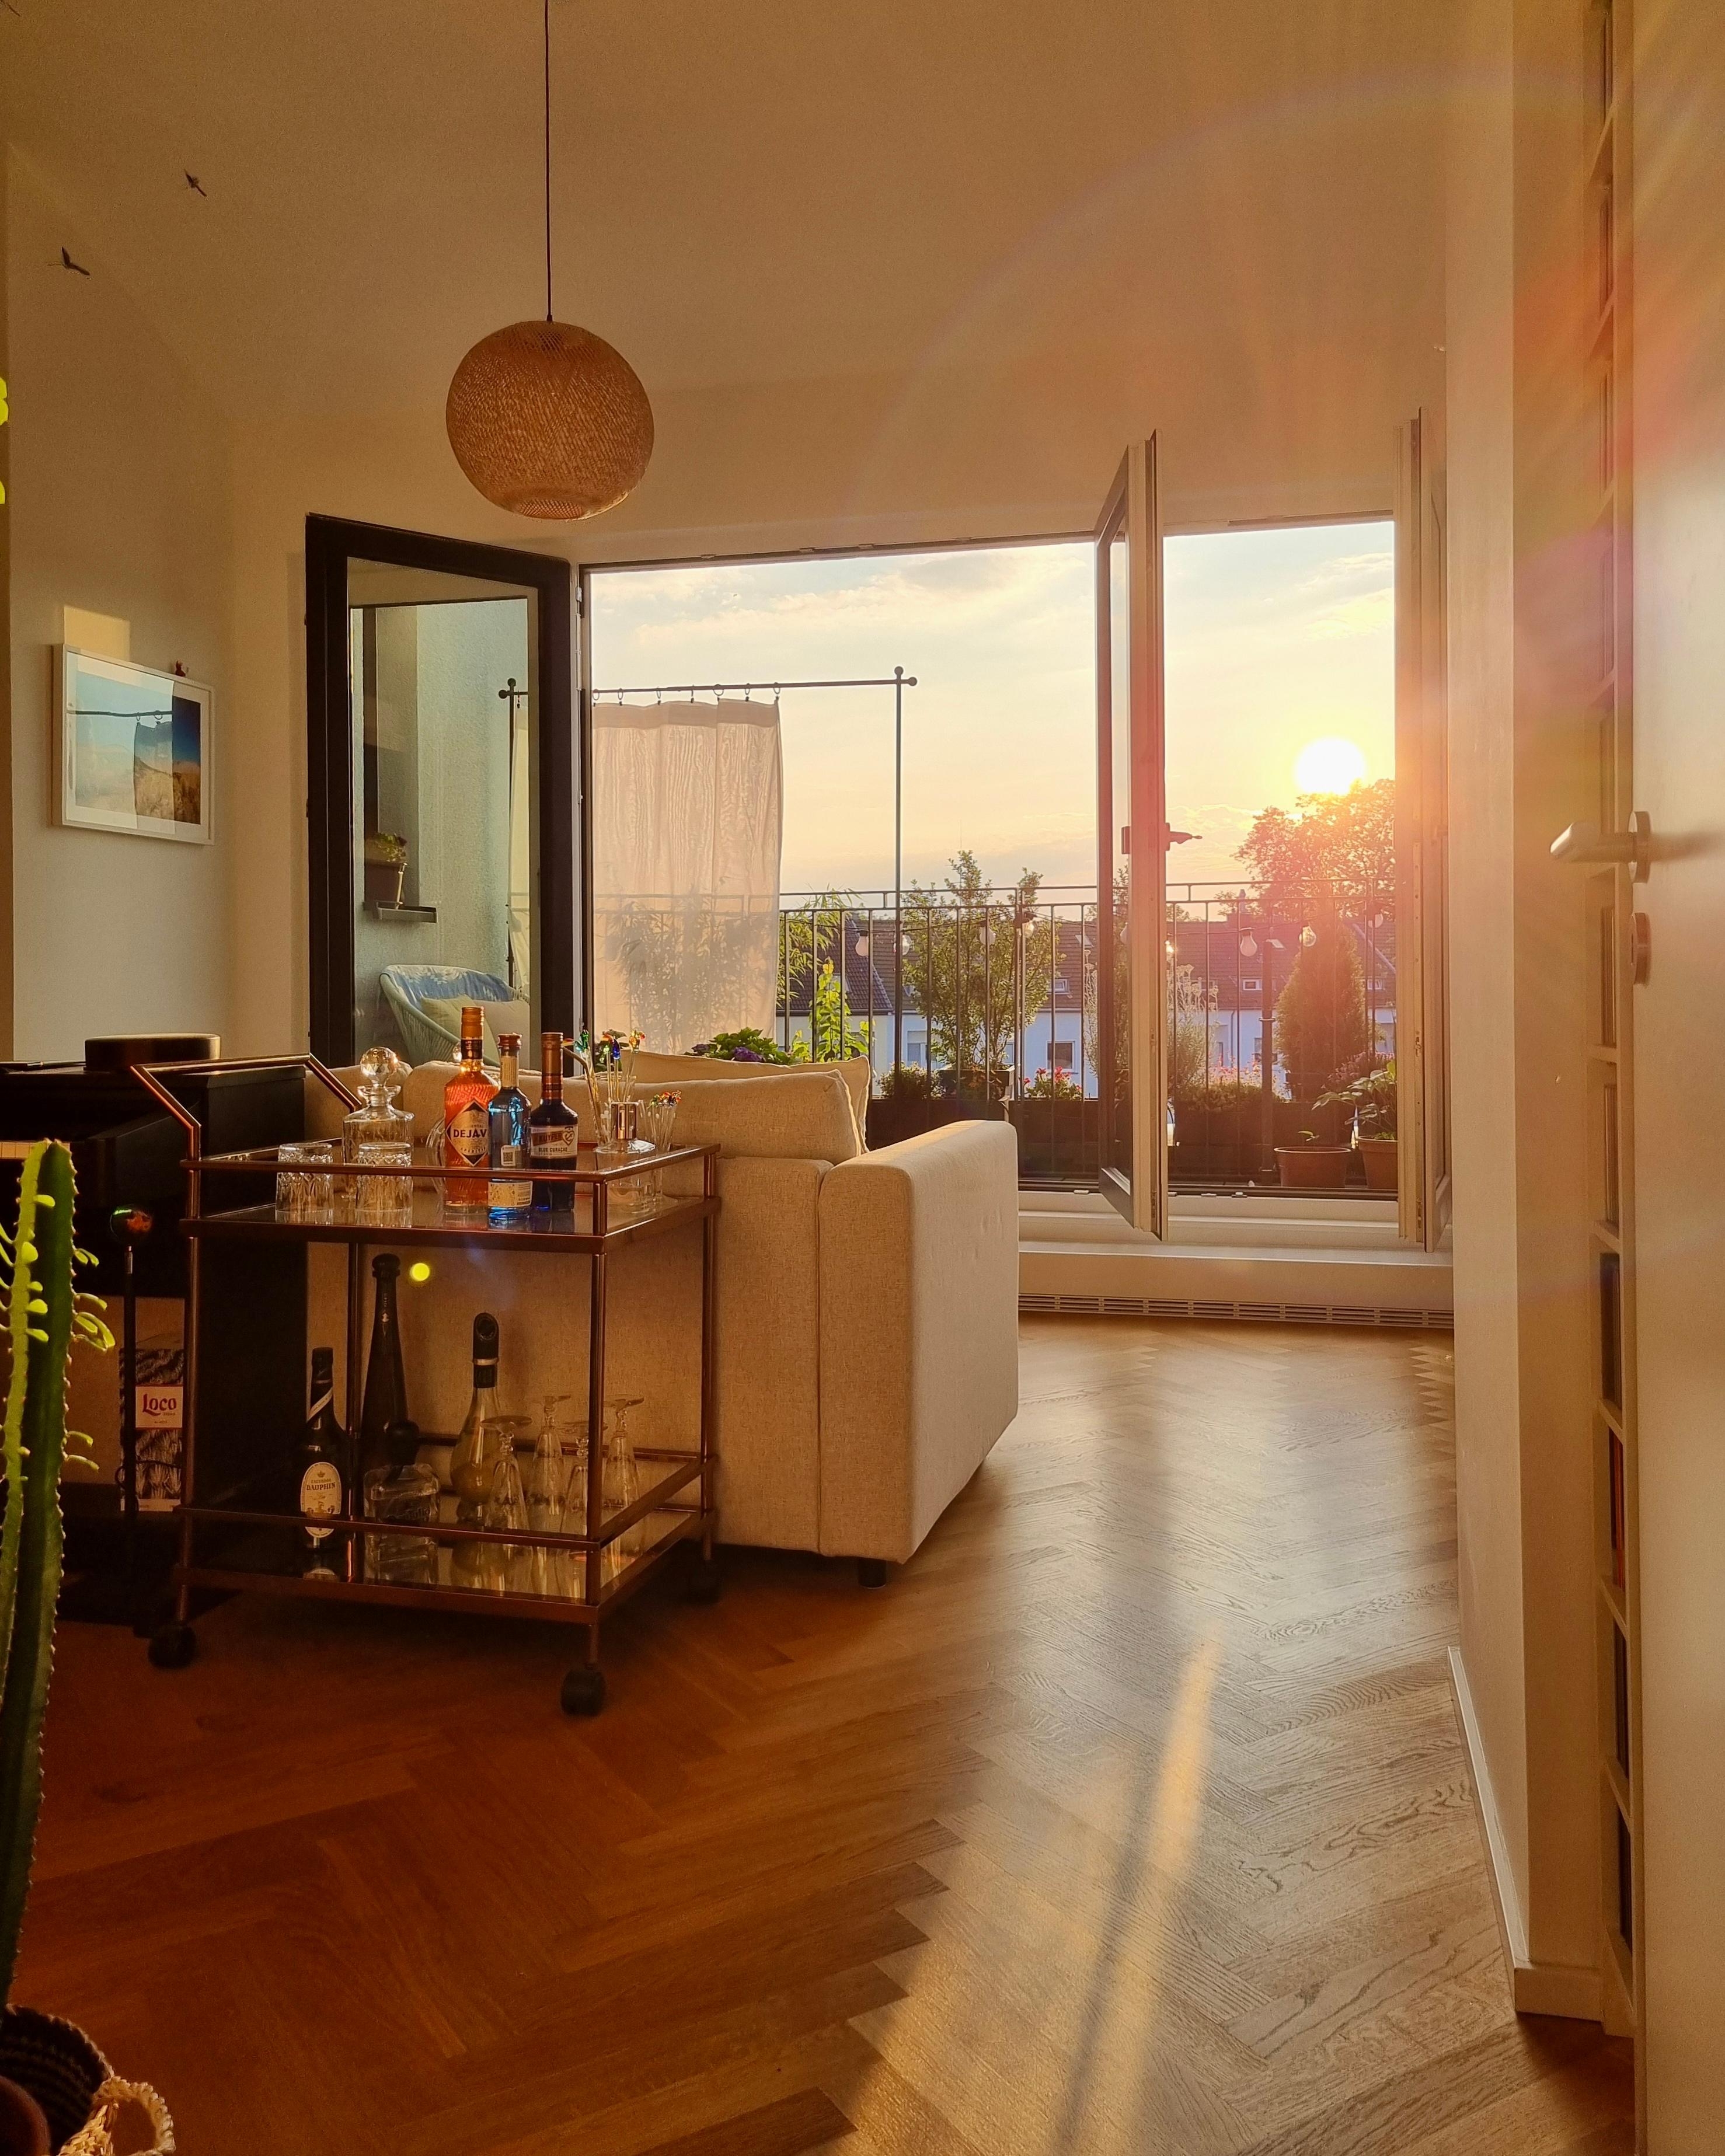 Ein Sonnenuntergang zum Niederknien - im wahrsten Sinne 😬📷🌅 #wohnzimmer #balkon #ausblick